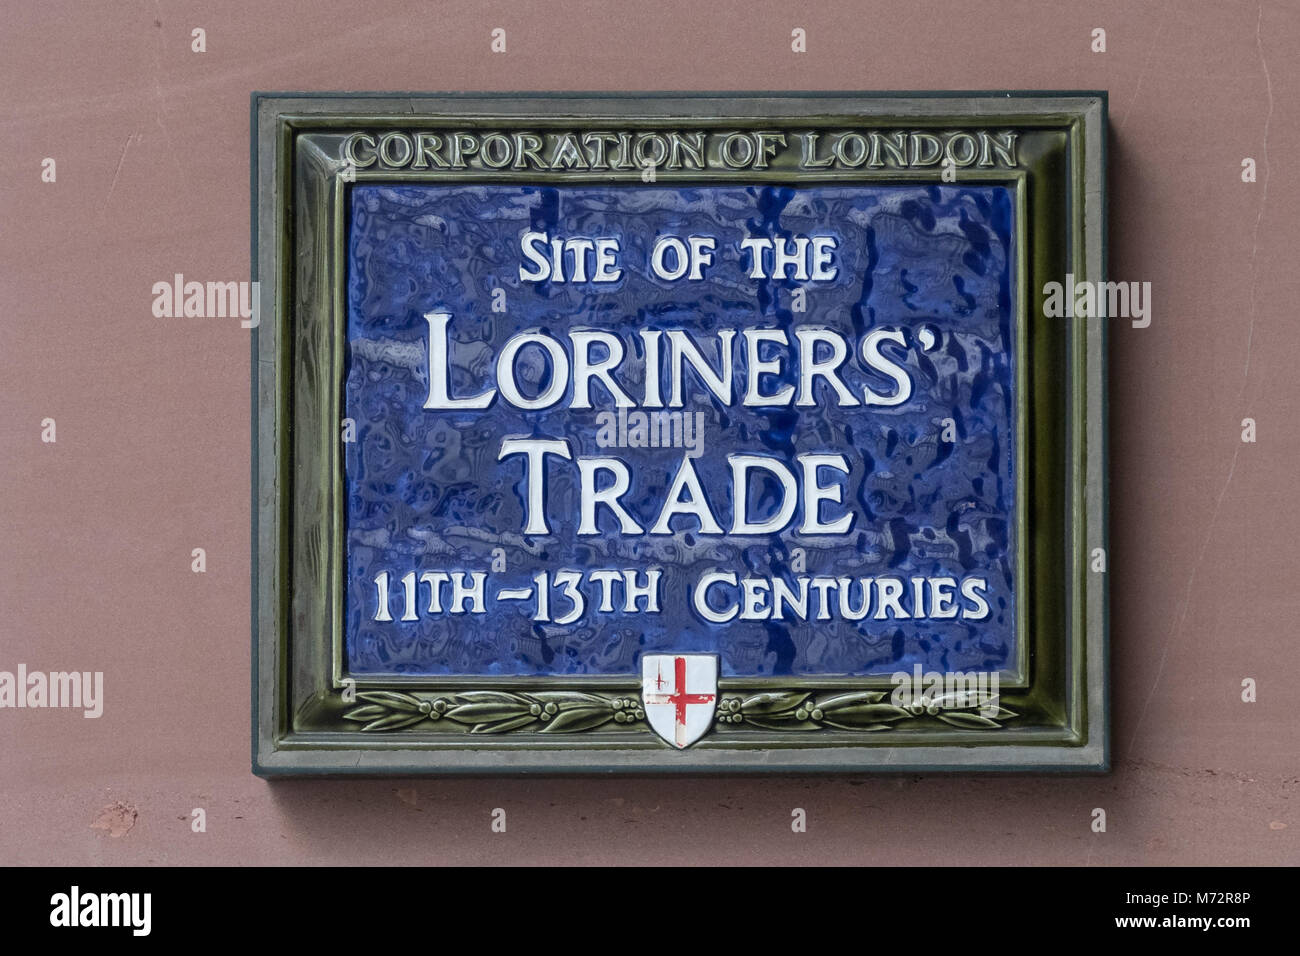 Placa azul conmemora el sitio de Loriners' Trade Association, Londres Foto de stock